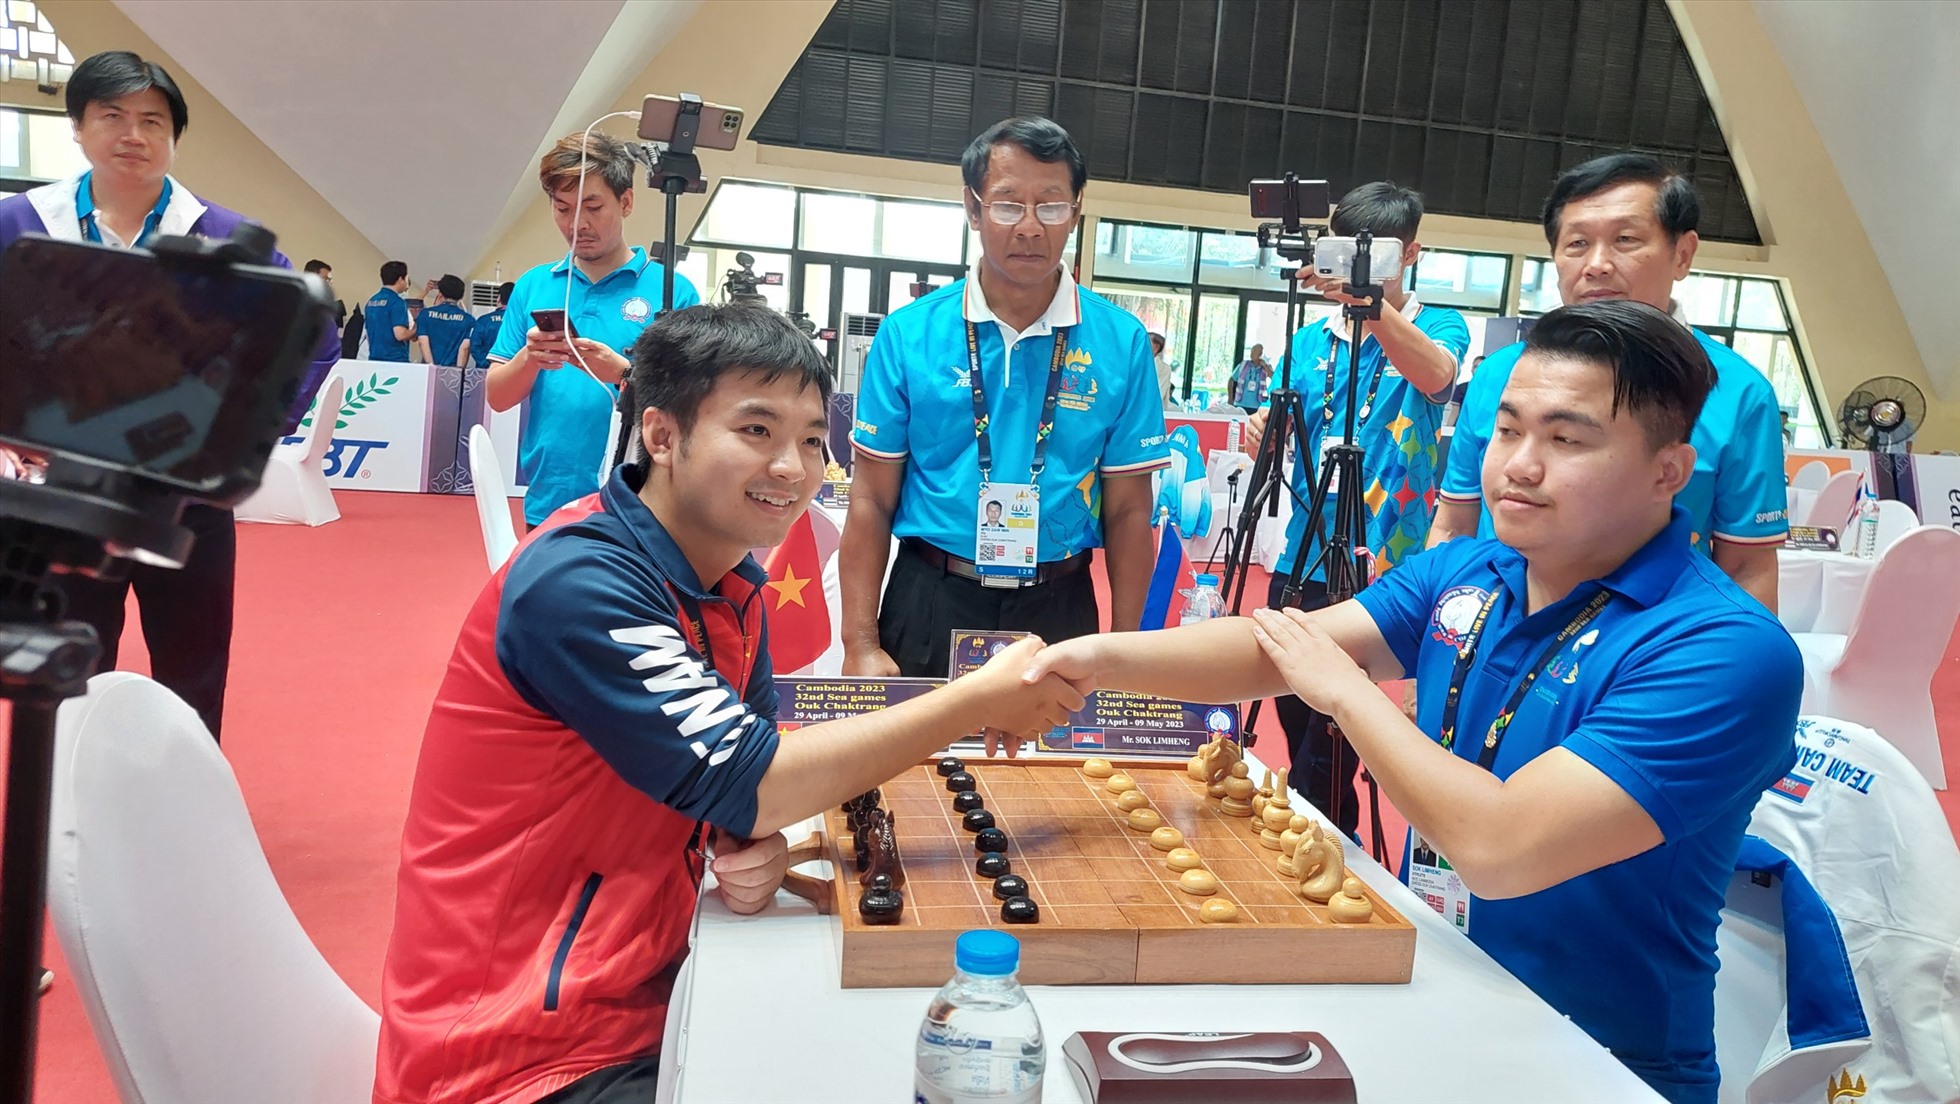 Nguyễn Quang Trung (trái) thua kỳ thủ Sok Limheng của Campuchia ở chung kết cờ chớp 5 phút cá nhân nam của môn cờ ốc sáng 6.5. Ảnh: Minh Thắng